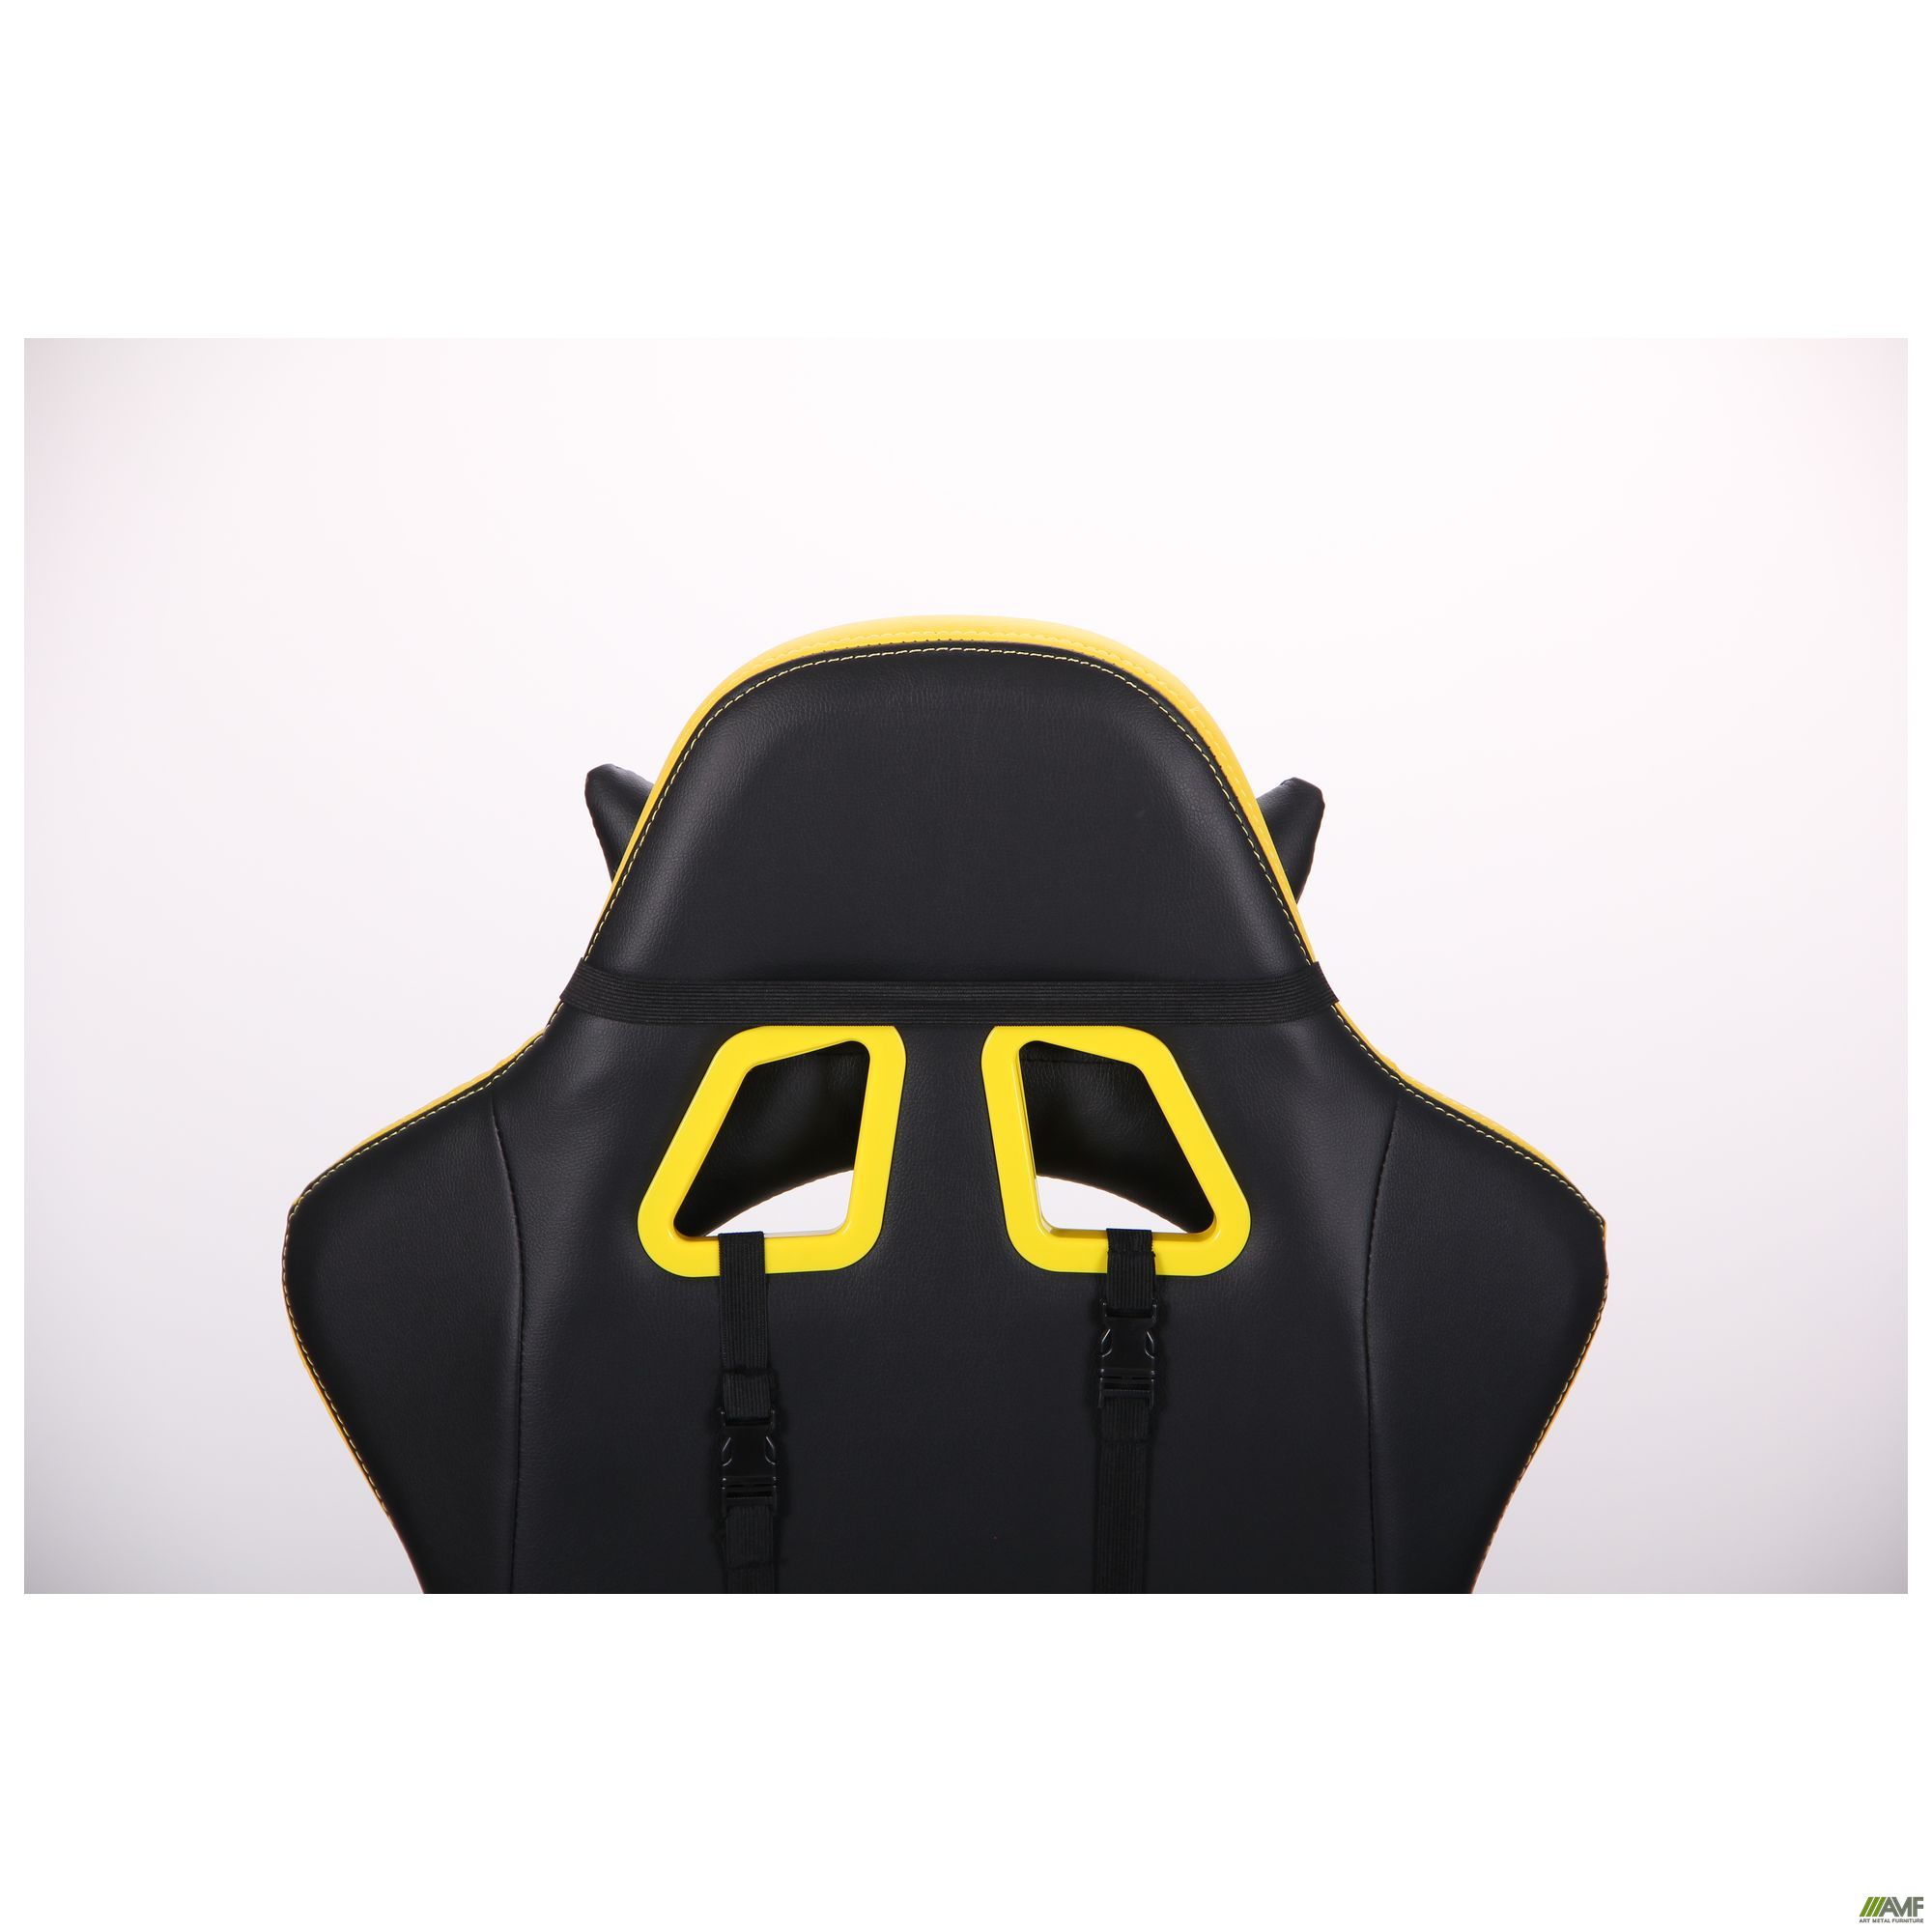 Фото 12 - Кресло VR Racer BattleBee черный/желтый 